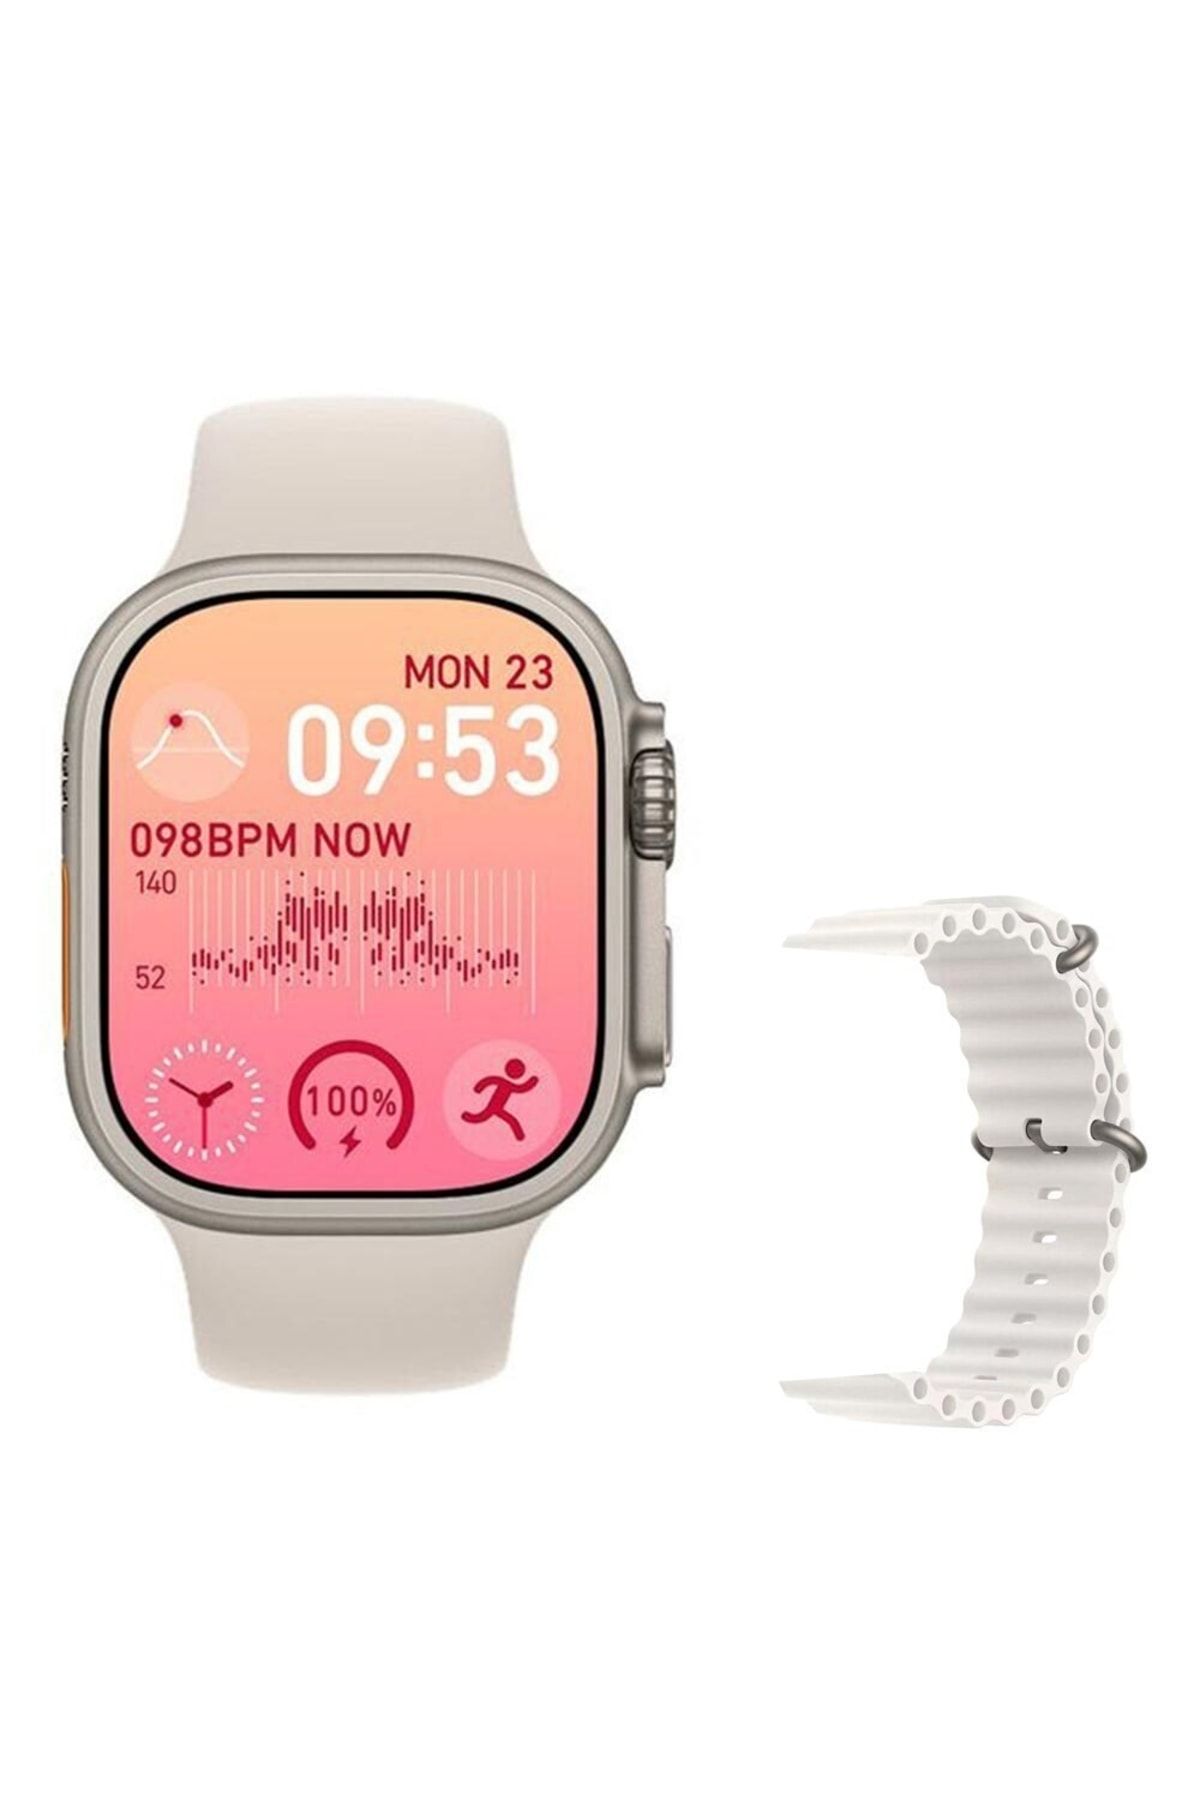 pazariz Gs8 Watch 8 Ultra Akıllı Saat Beyaz Türkçe Watch 2.02 Inc Beyaz Slikon Kordon Hediye